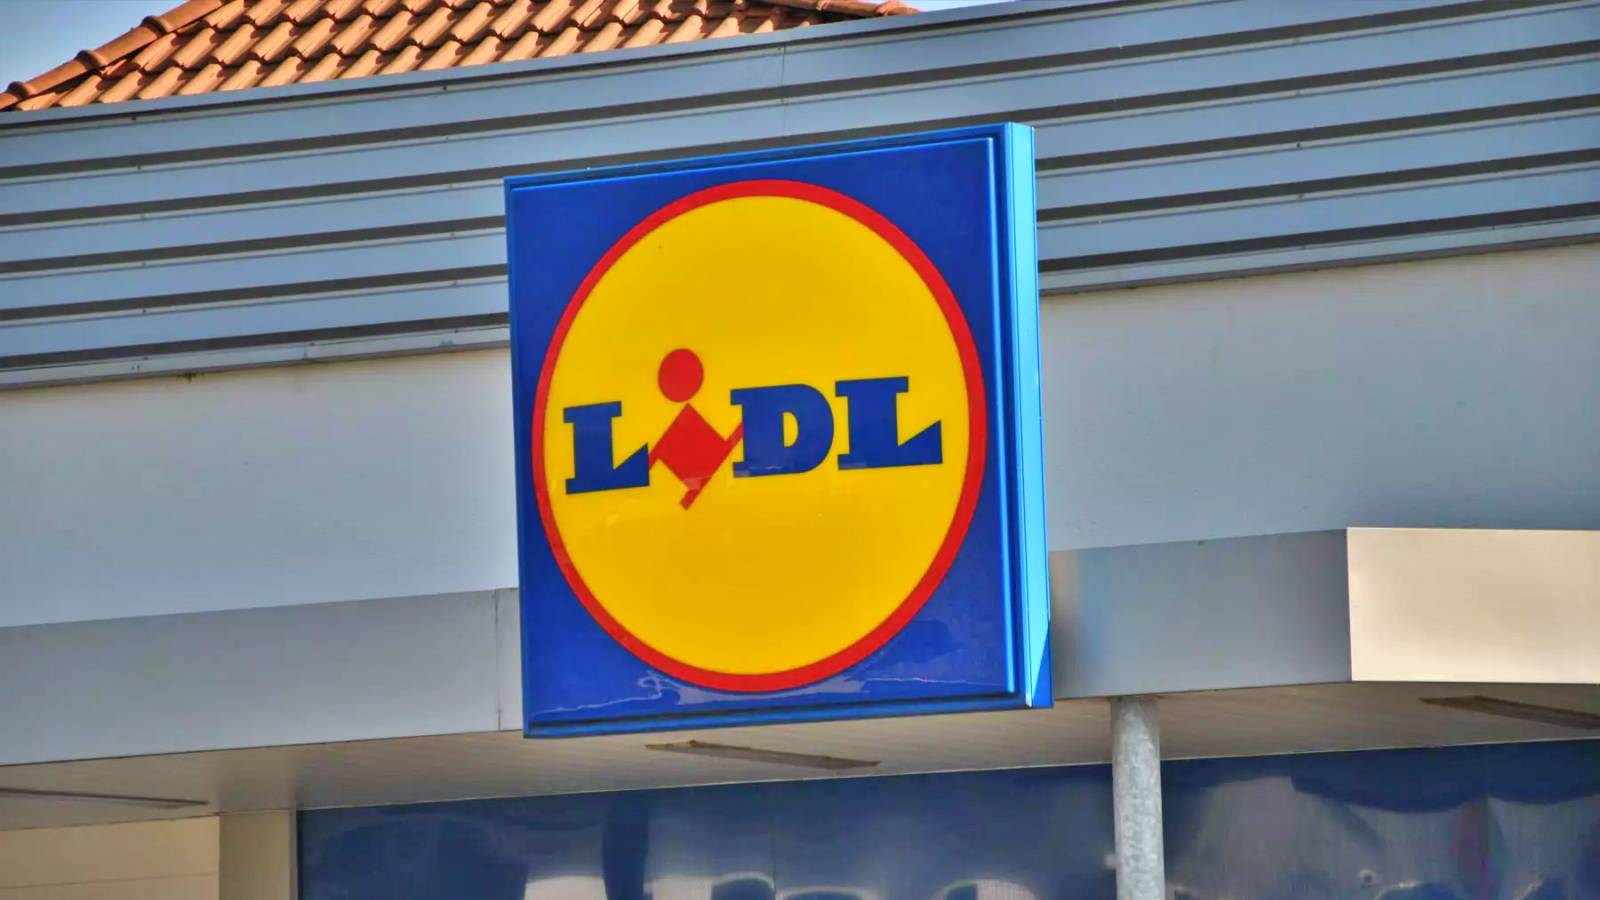 Decisión tomada por LIDL Rumania Tiendas Noticias anunciadas a los clientes